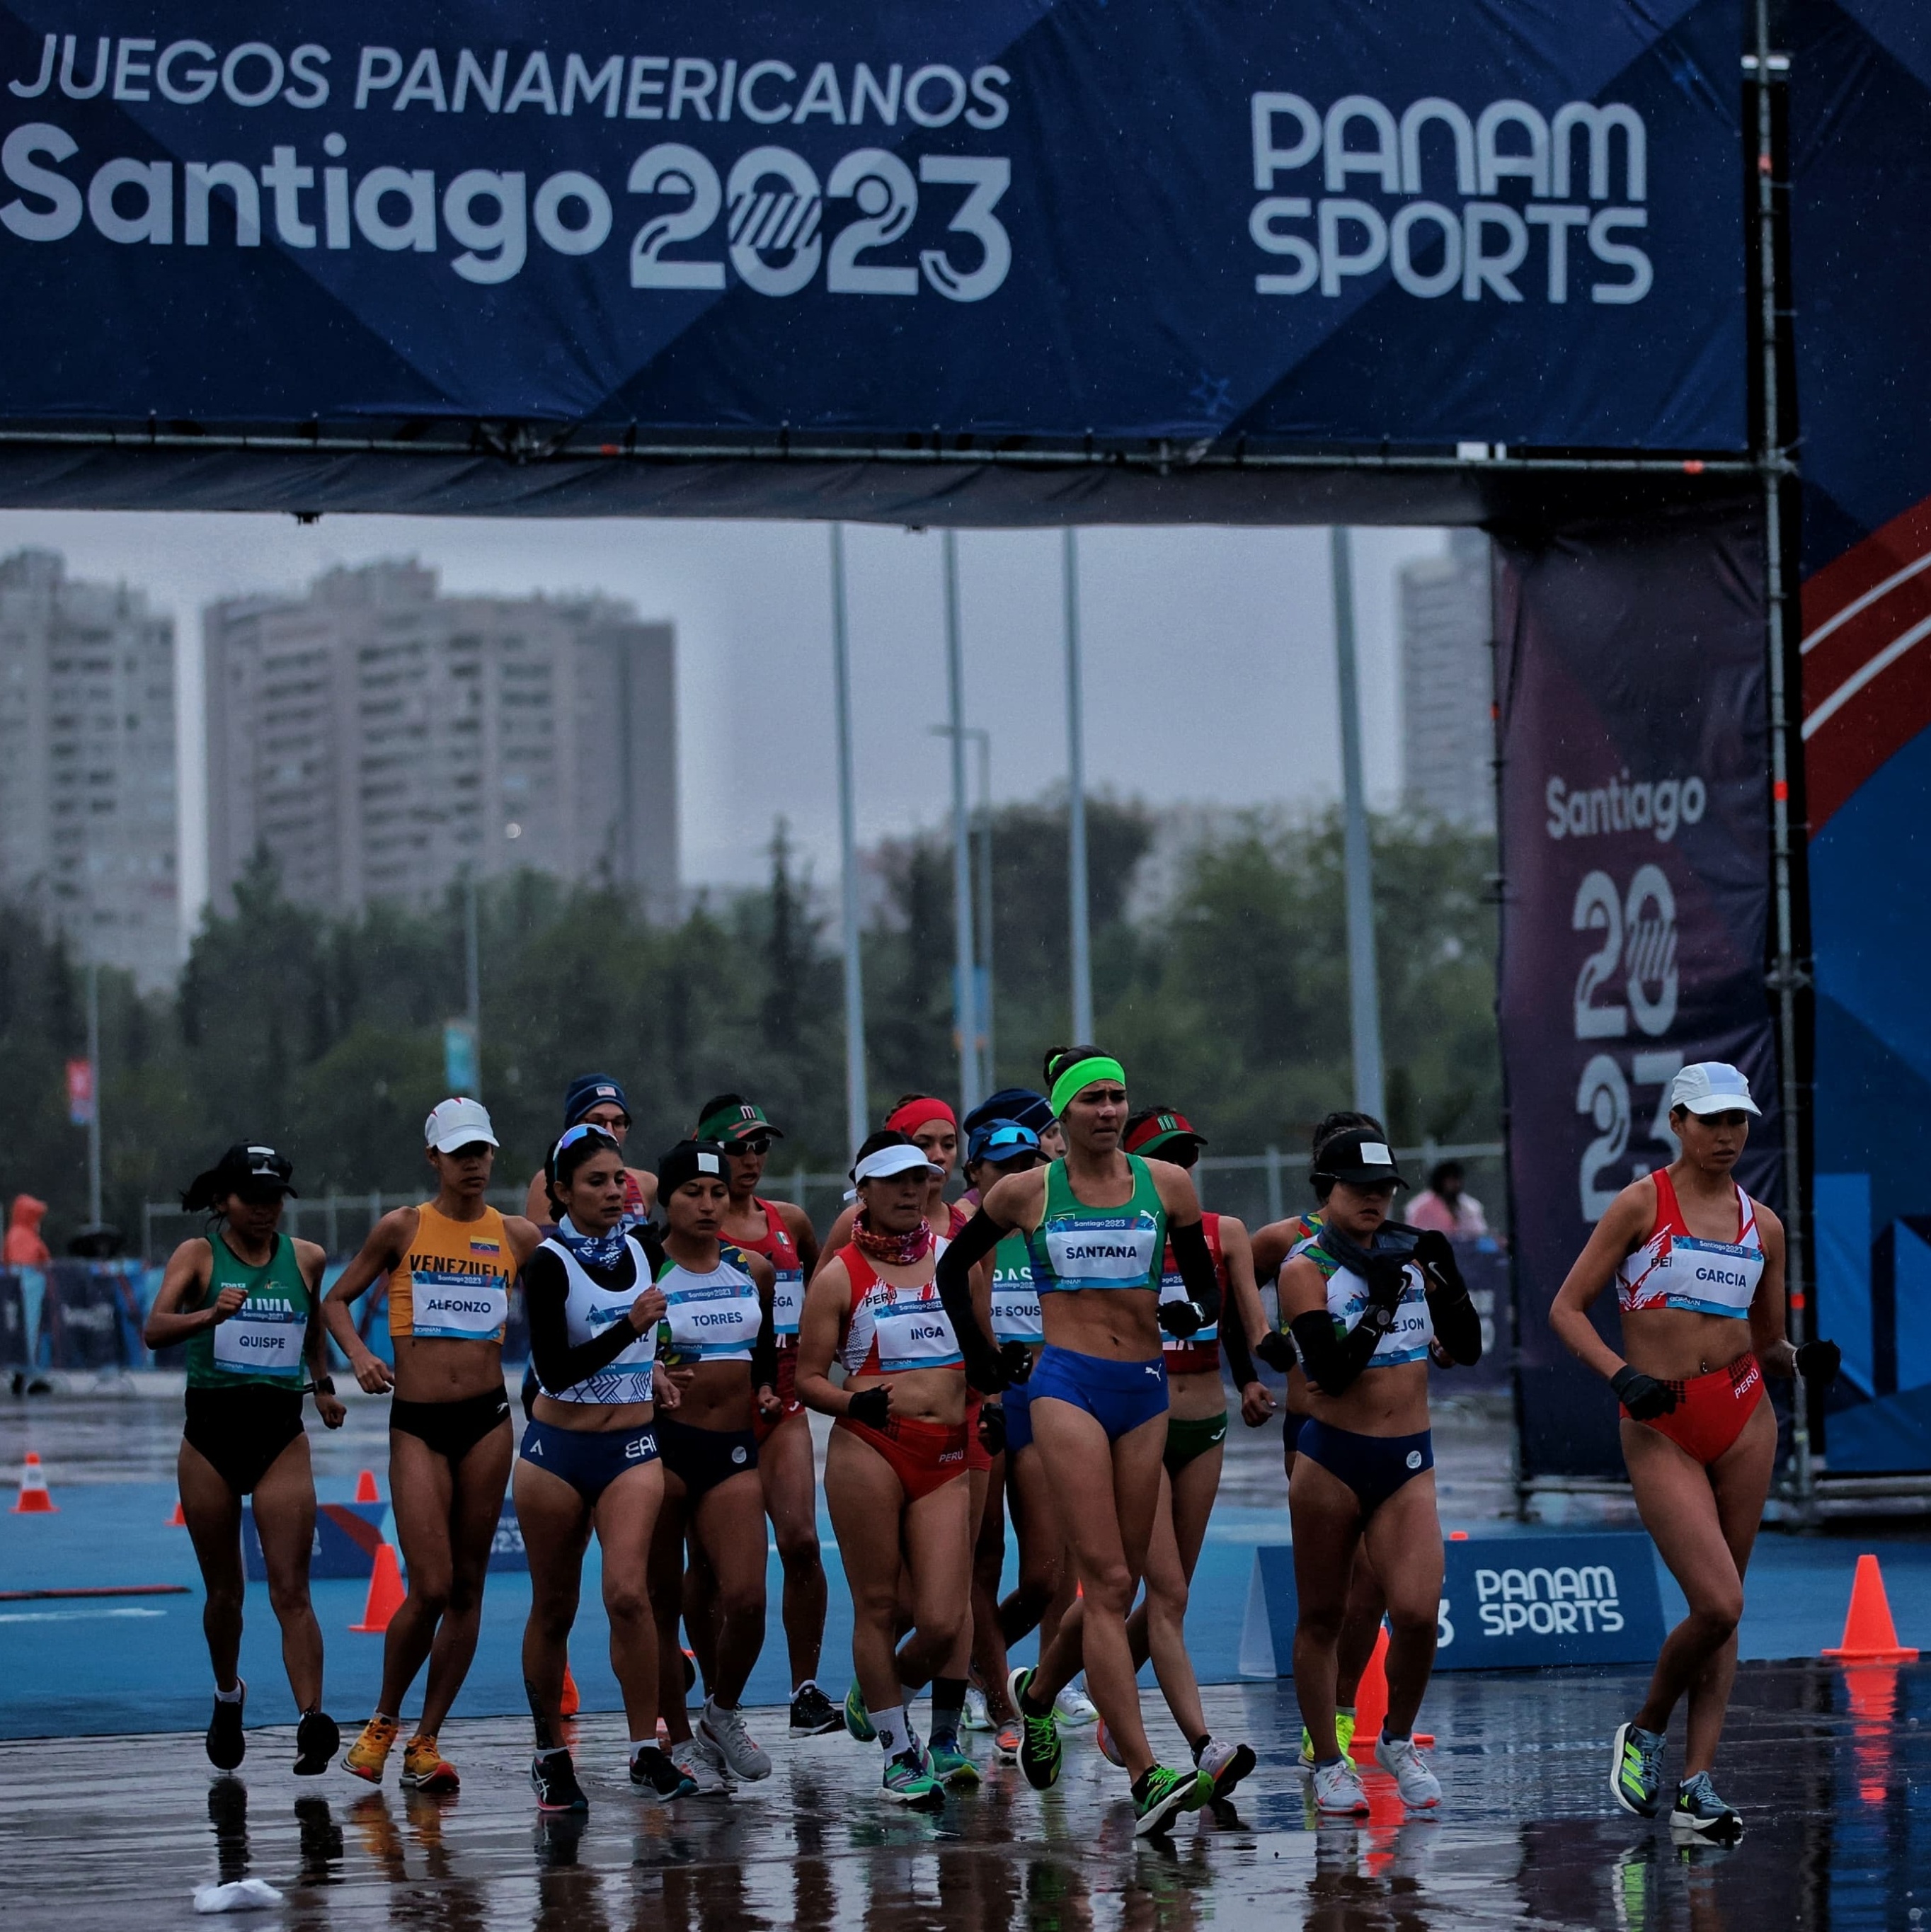 Chile 2023 Santiago Juegos Panamericanos MNH